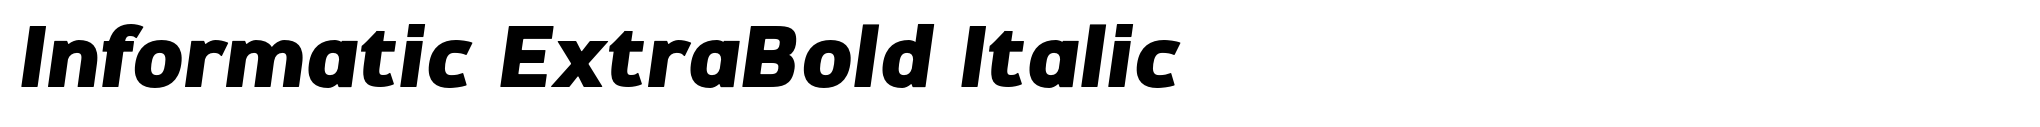 Informatic ExtraBold Italic image